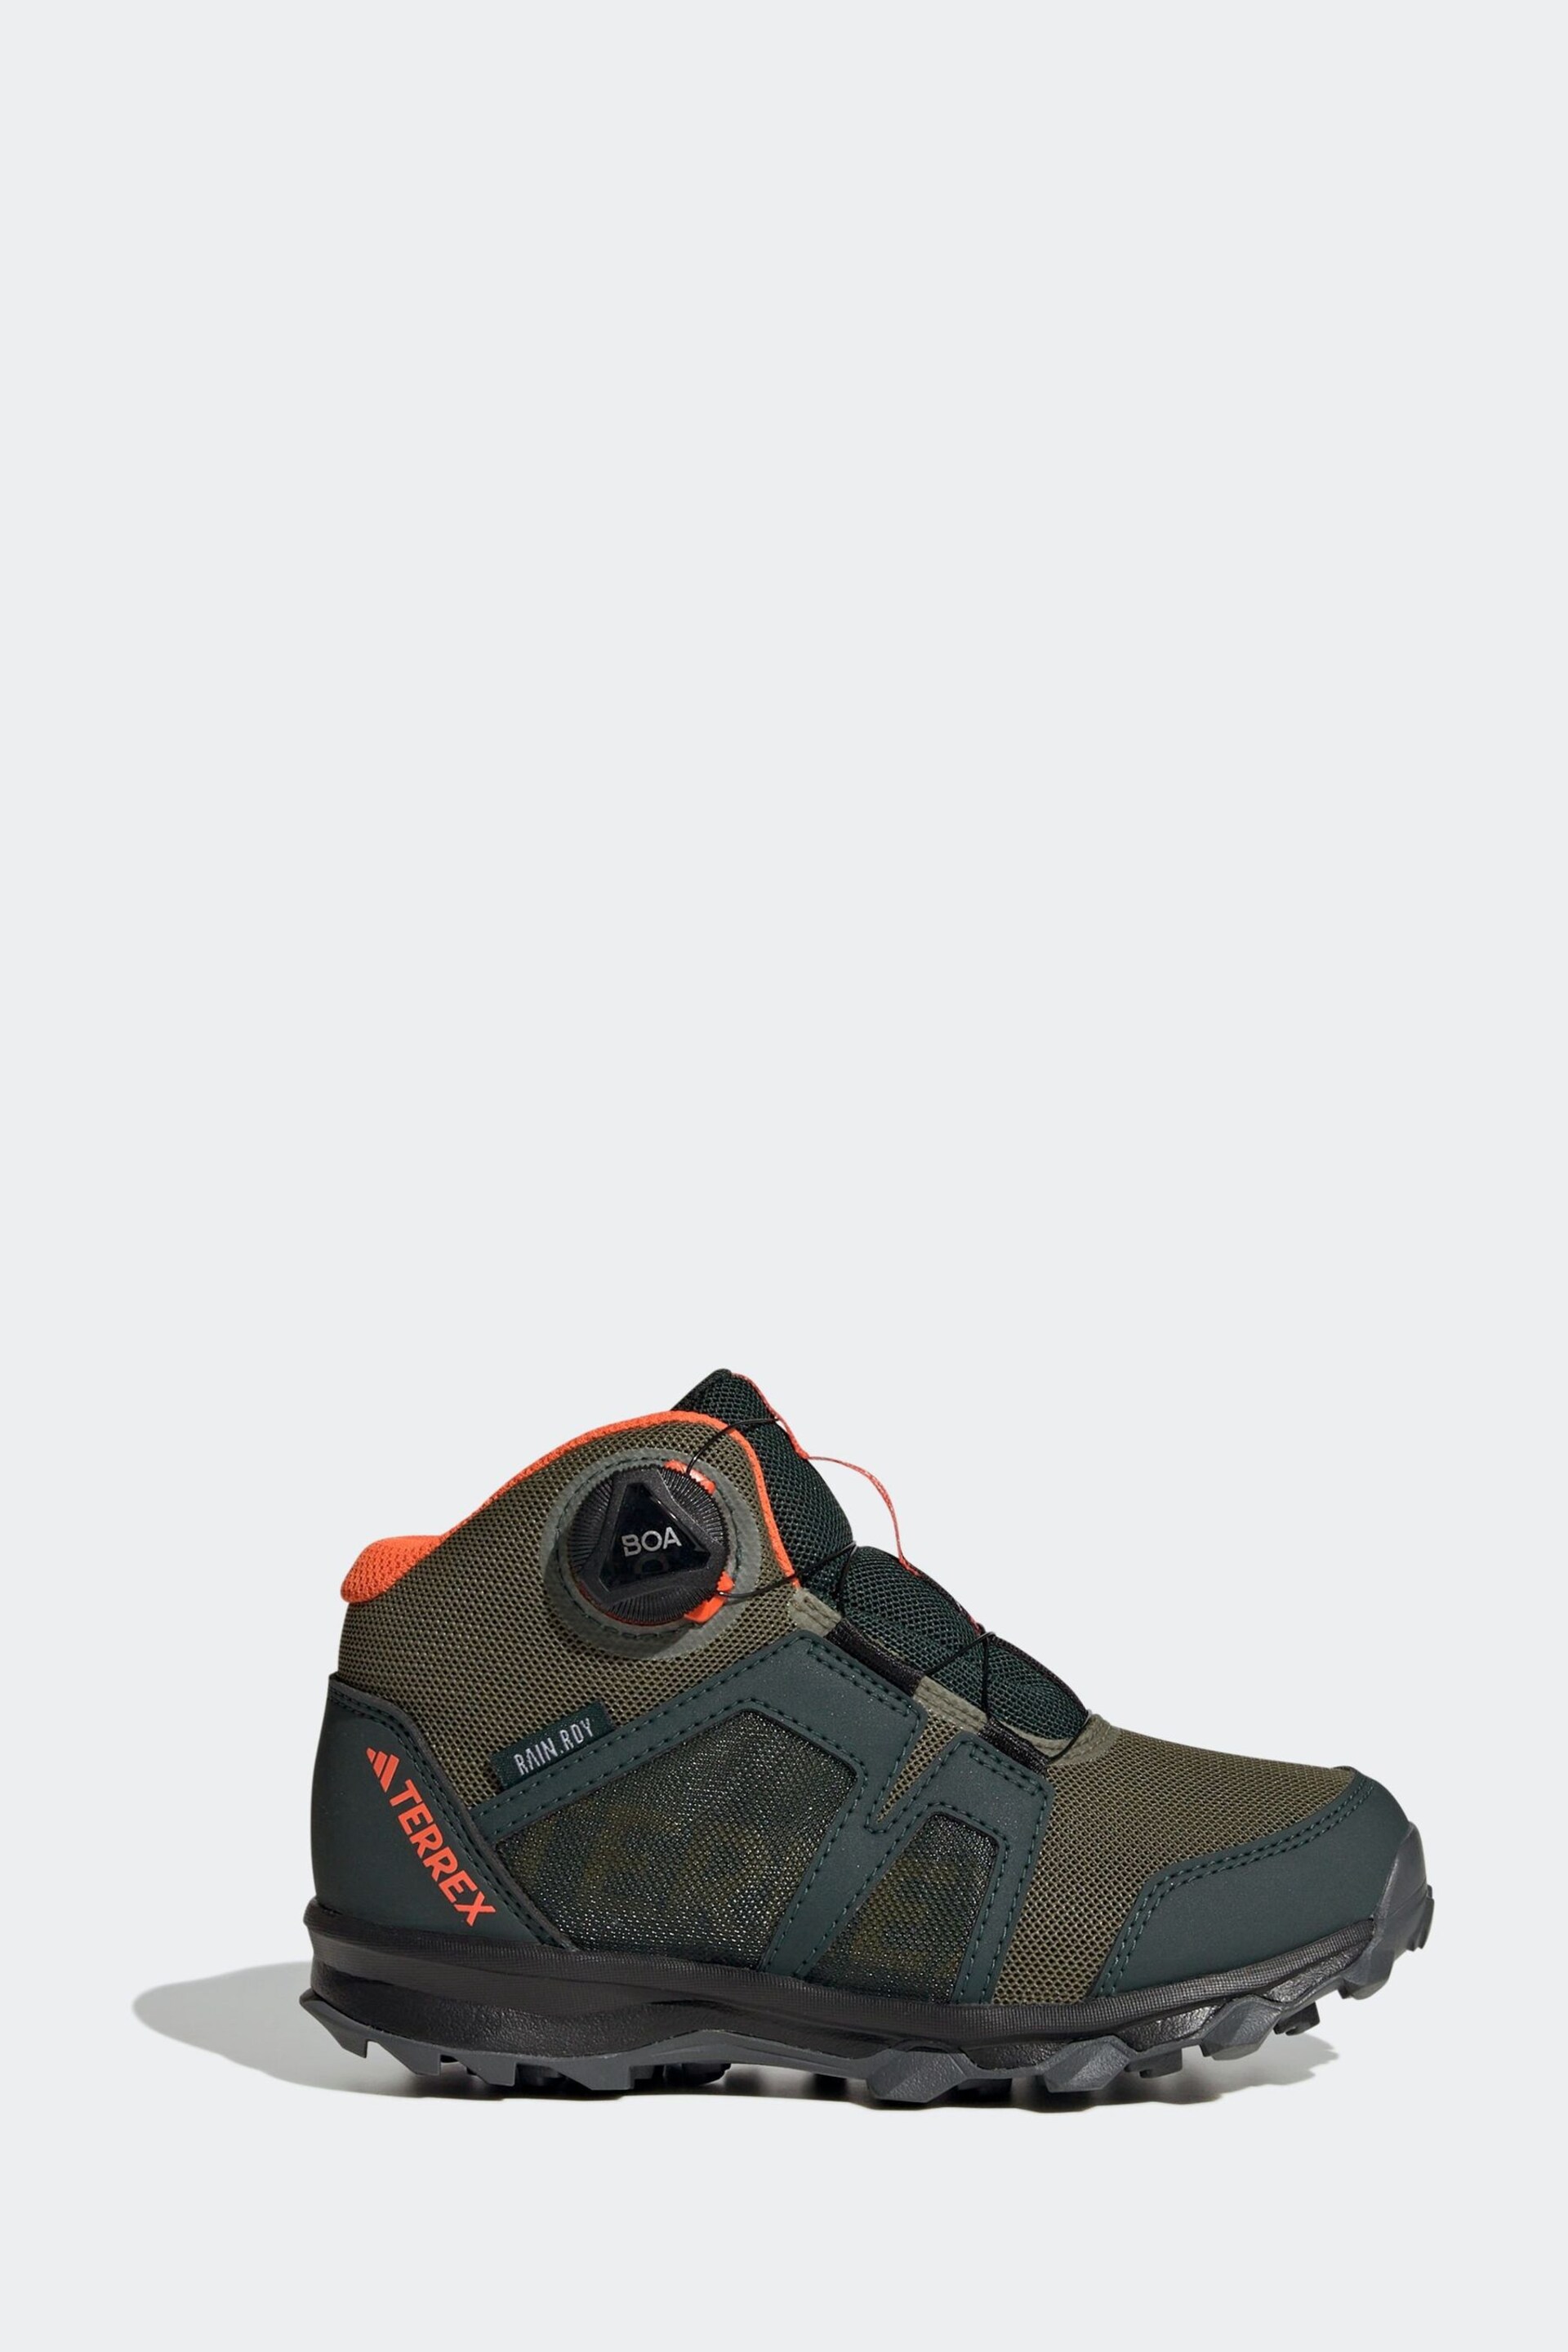 adidas Green Terrex Boa Mid Rain Hiking Boots - Image 1 of 9